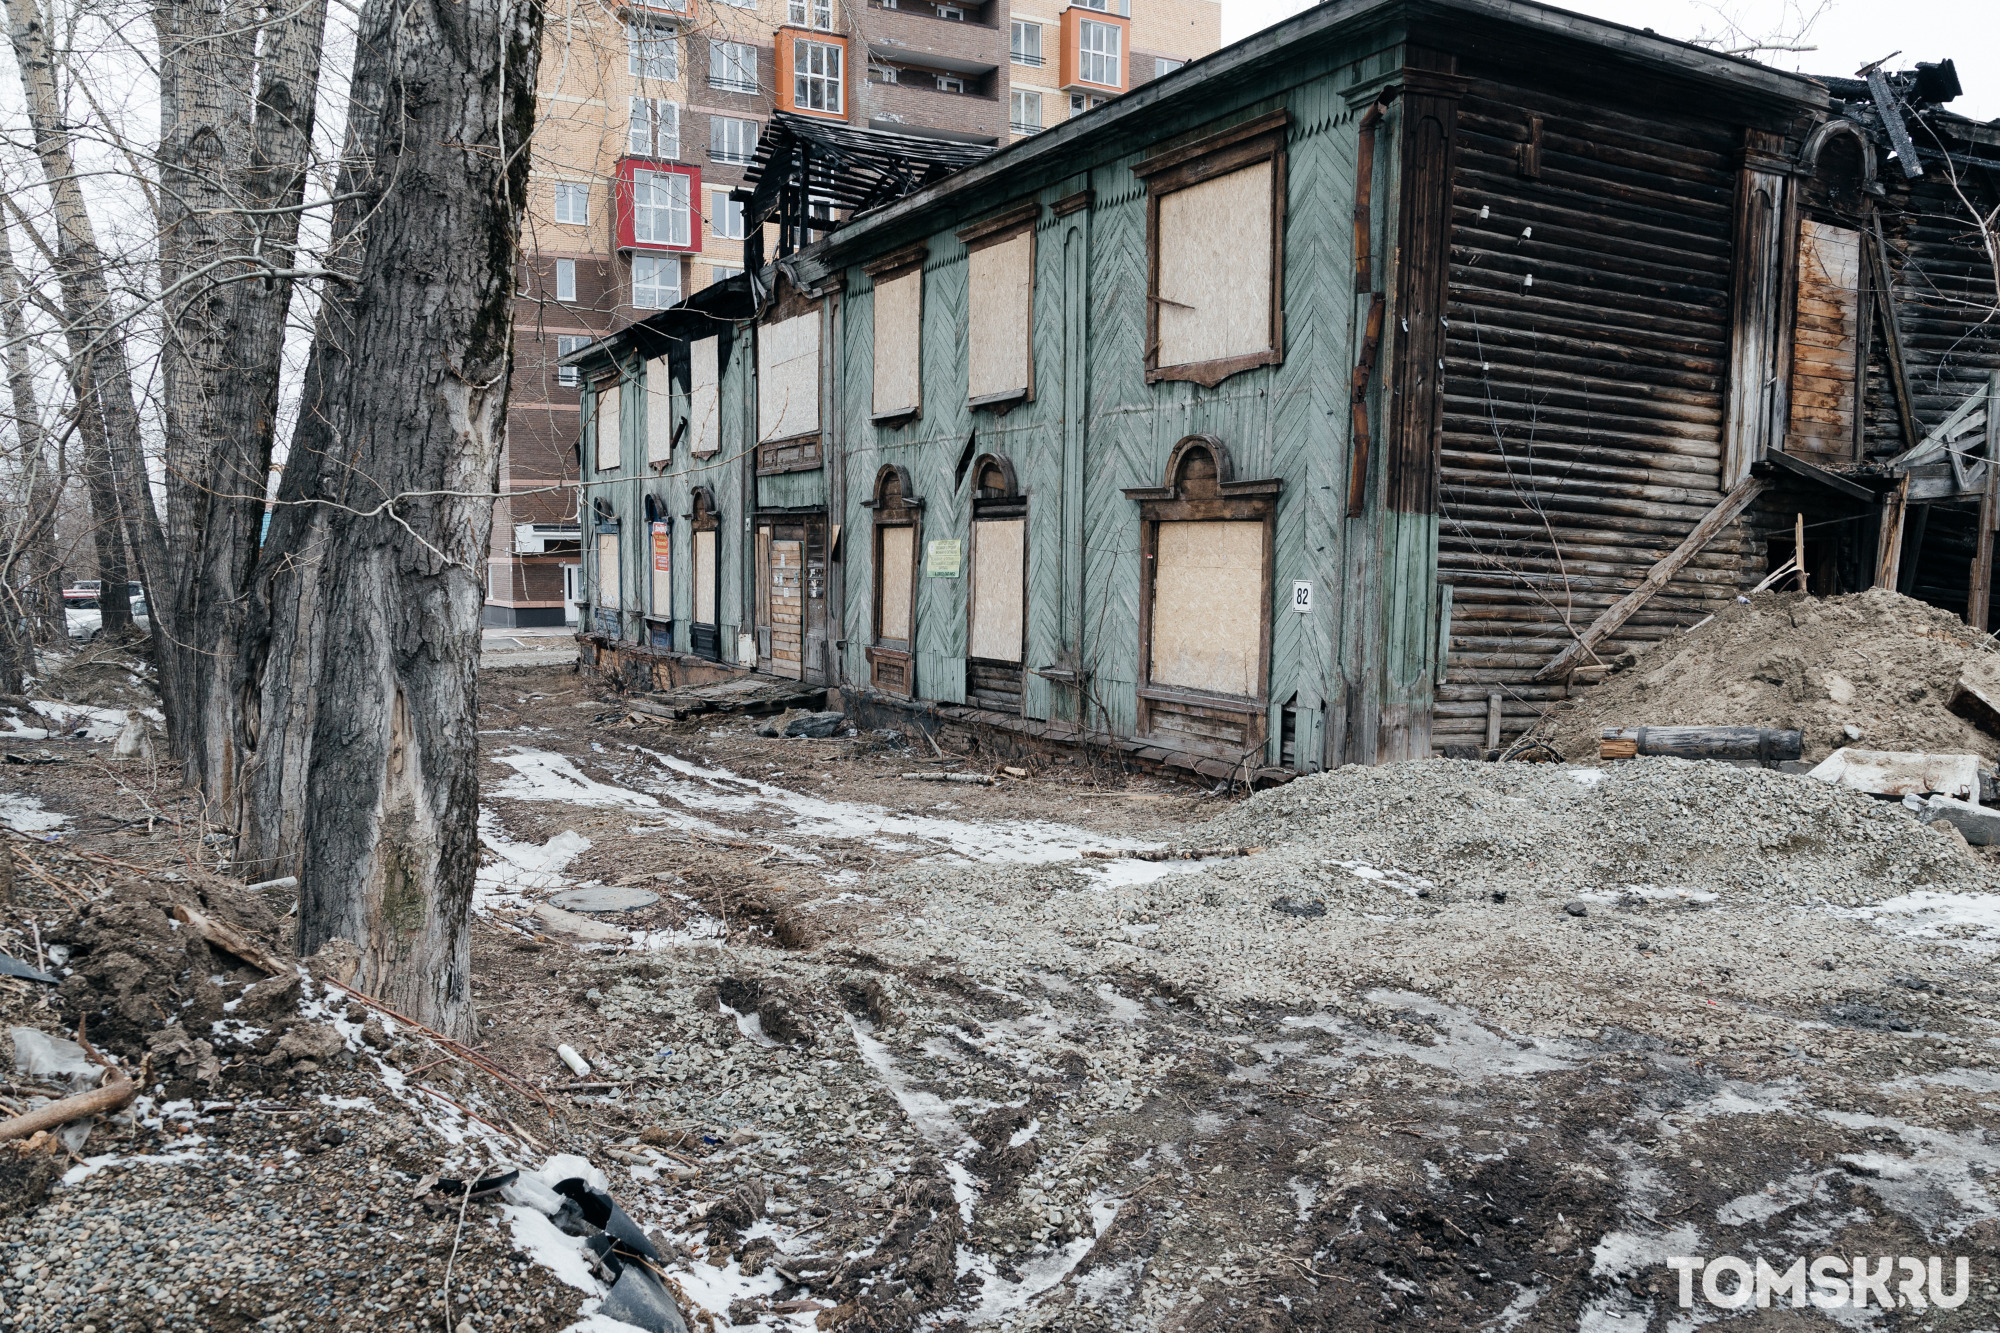 «Обследуем стройки и общественные пространства»: как специалисты аппарата Уполномоченного по правам детей выявляют небезопасные участки в Томске